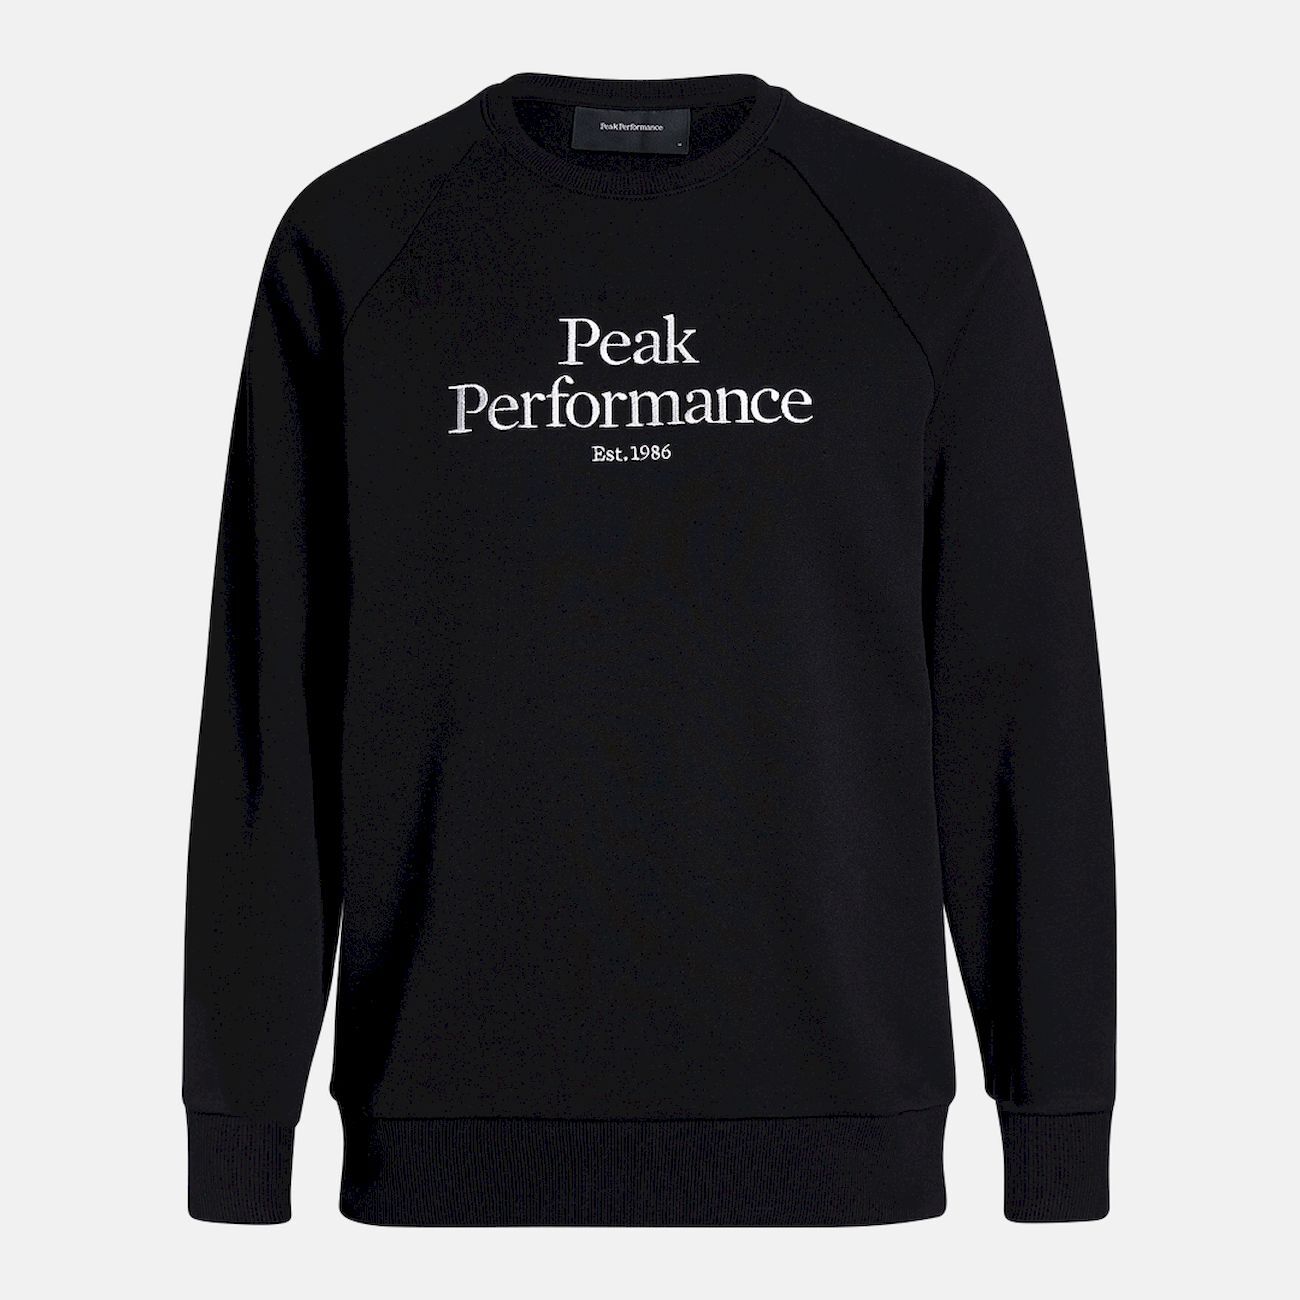 Peak Performance Original Crew - Överdragströjor - Herr